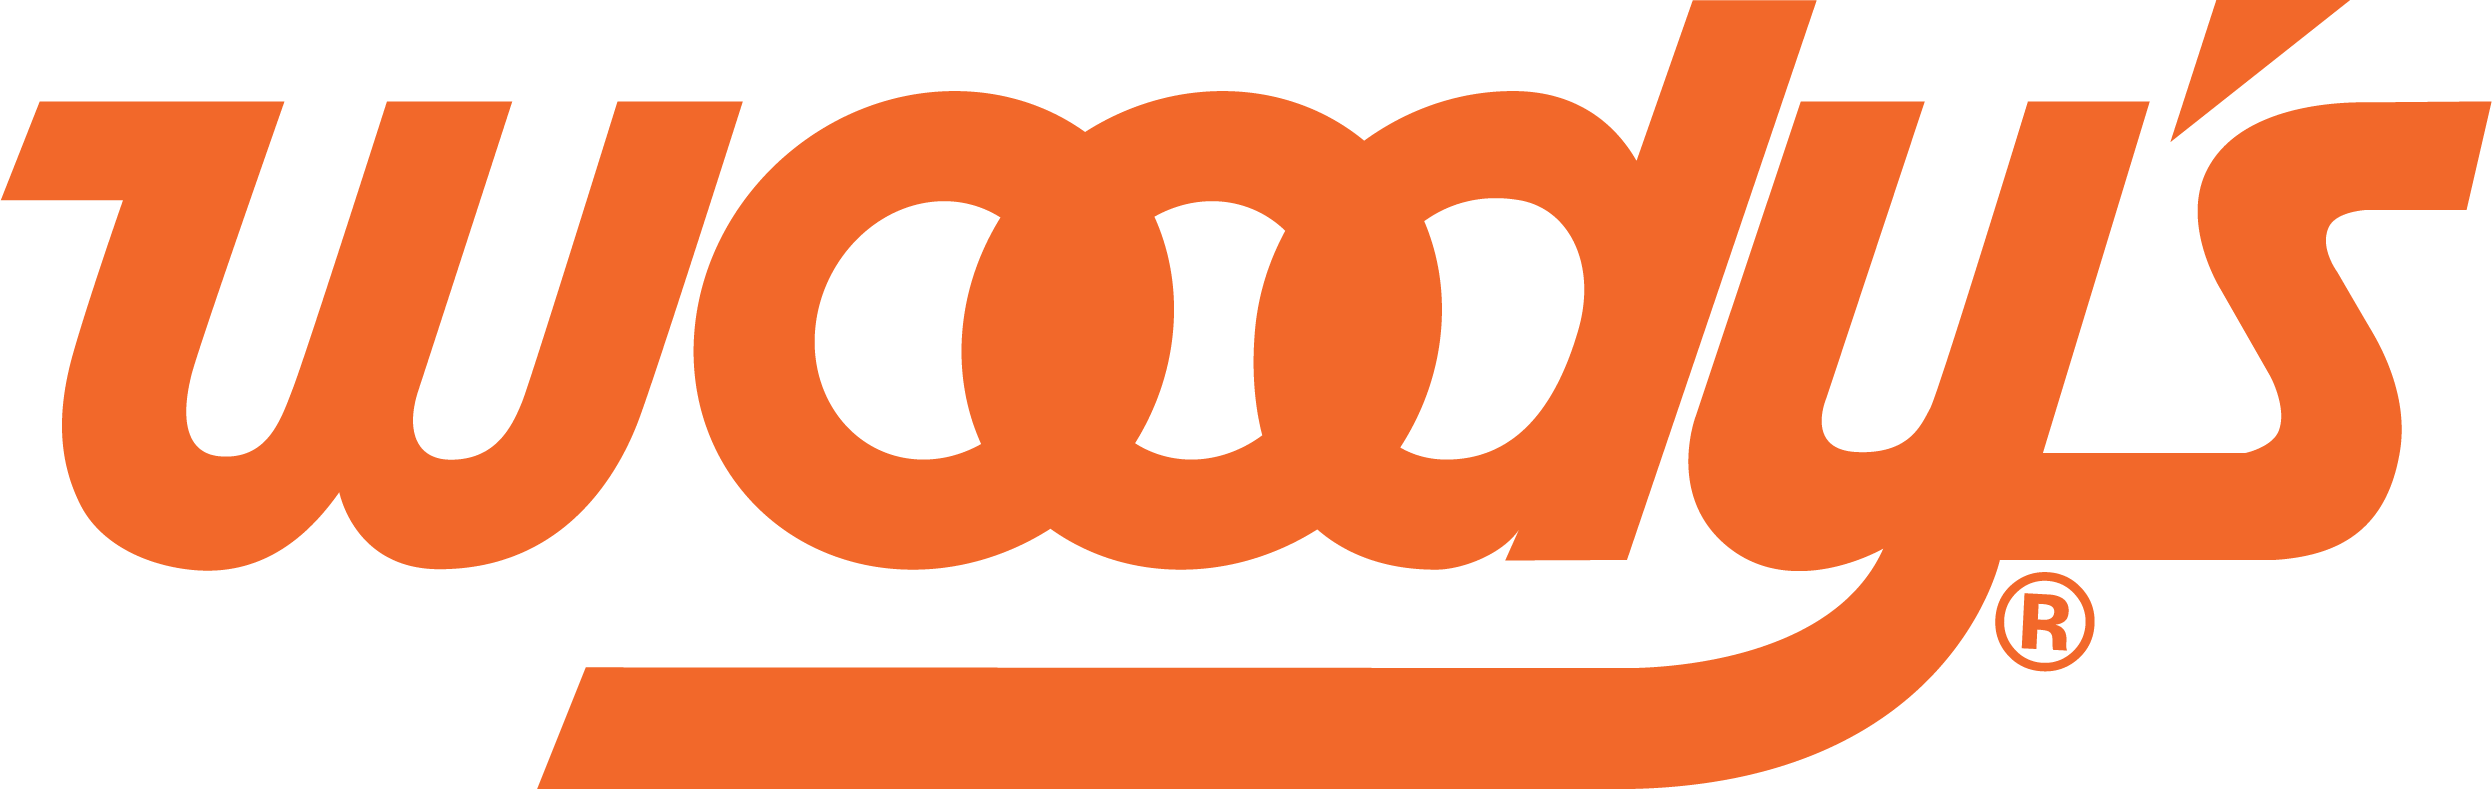 woodys logo_orange_PMS165 (1).png